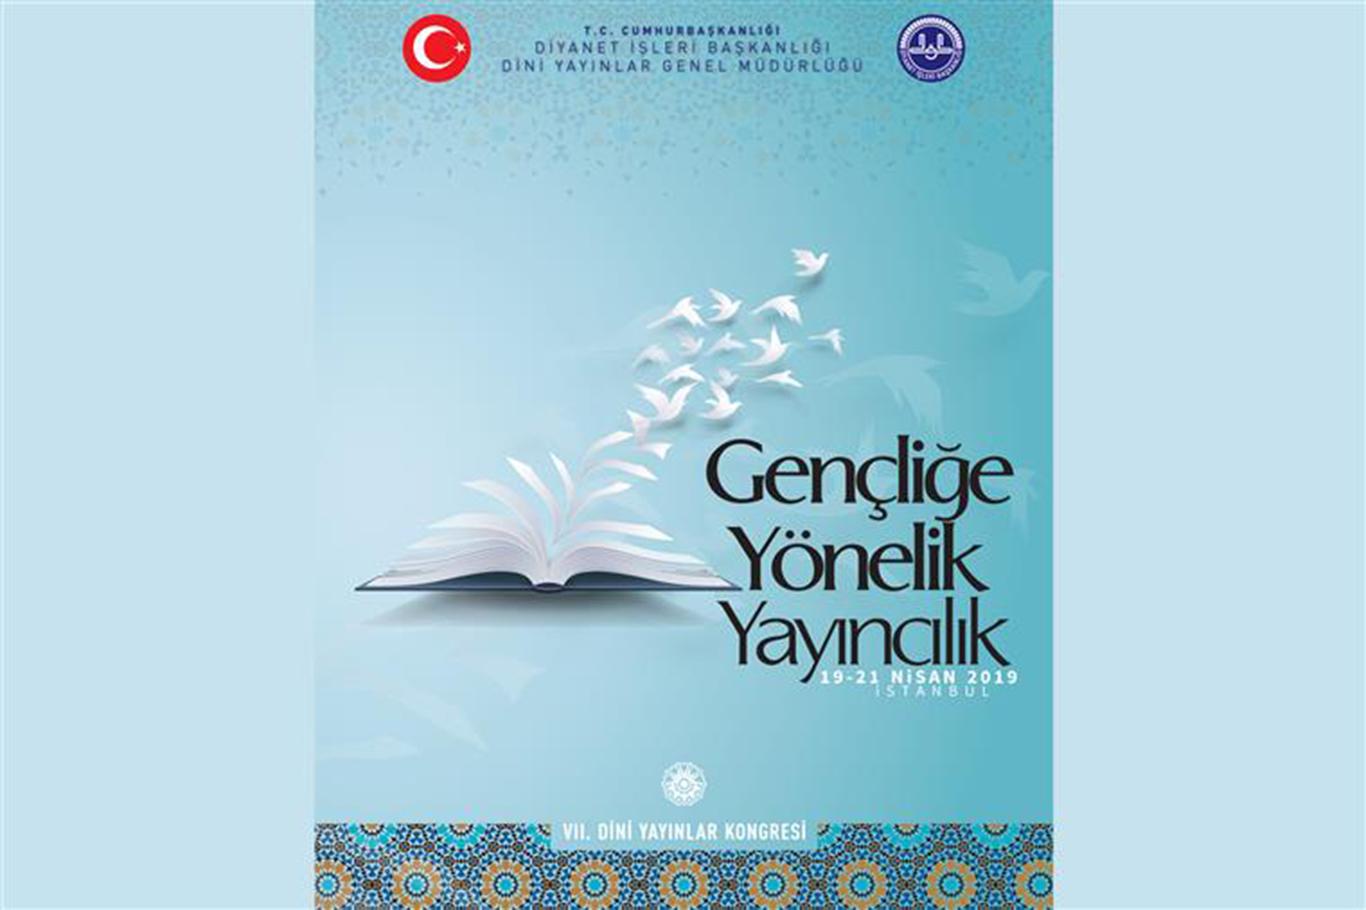 7. Dini Yayınlar Kongresi İstanbul'da başlıyor